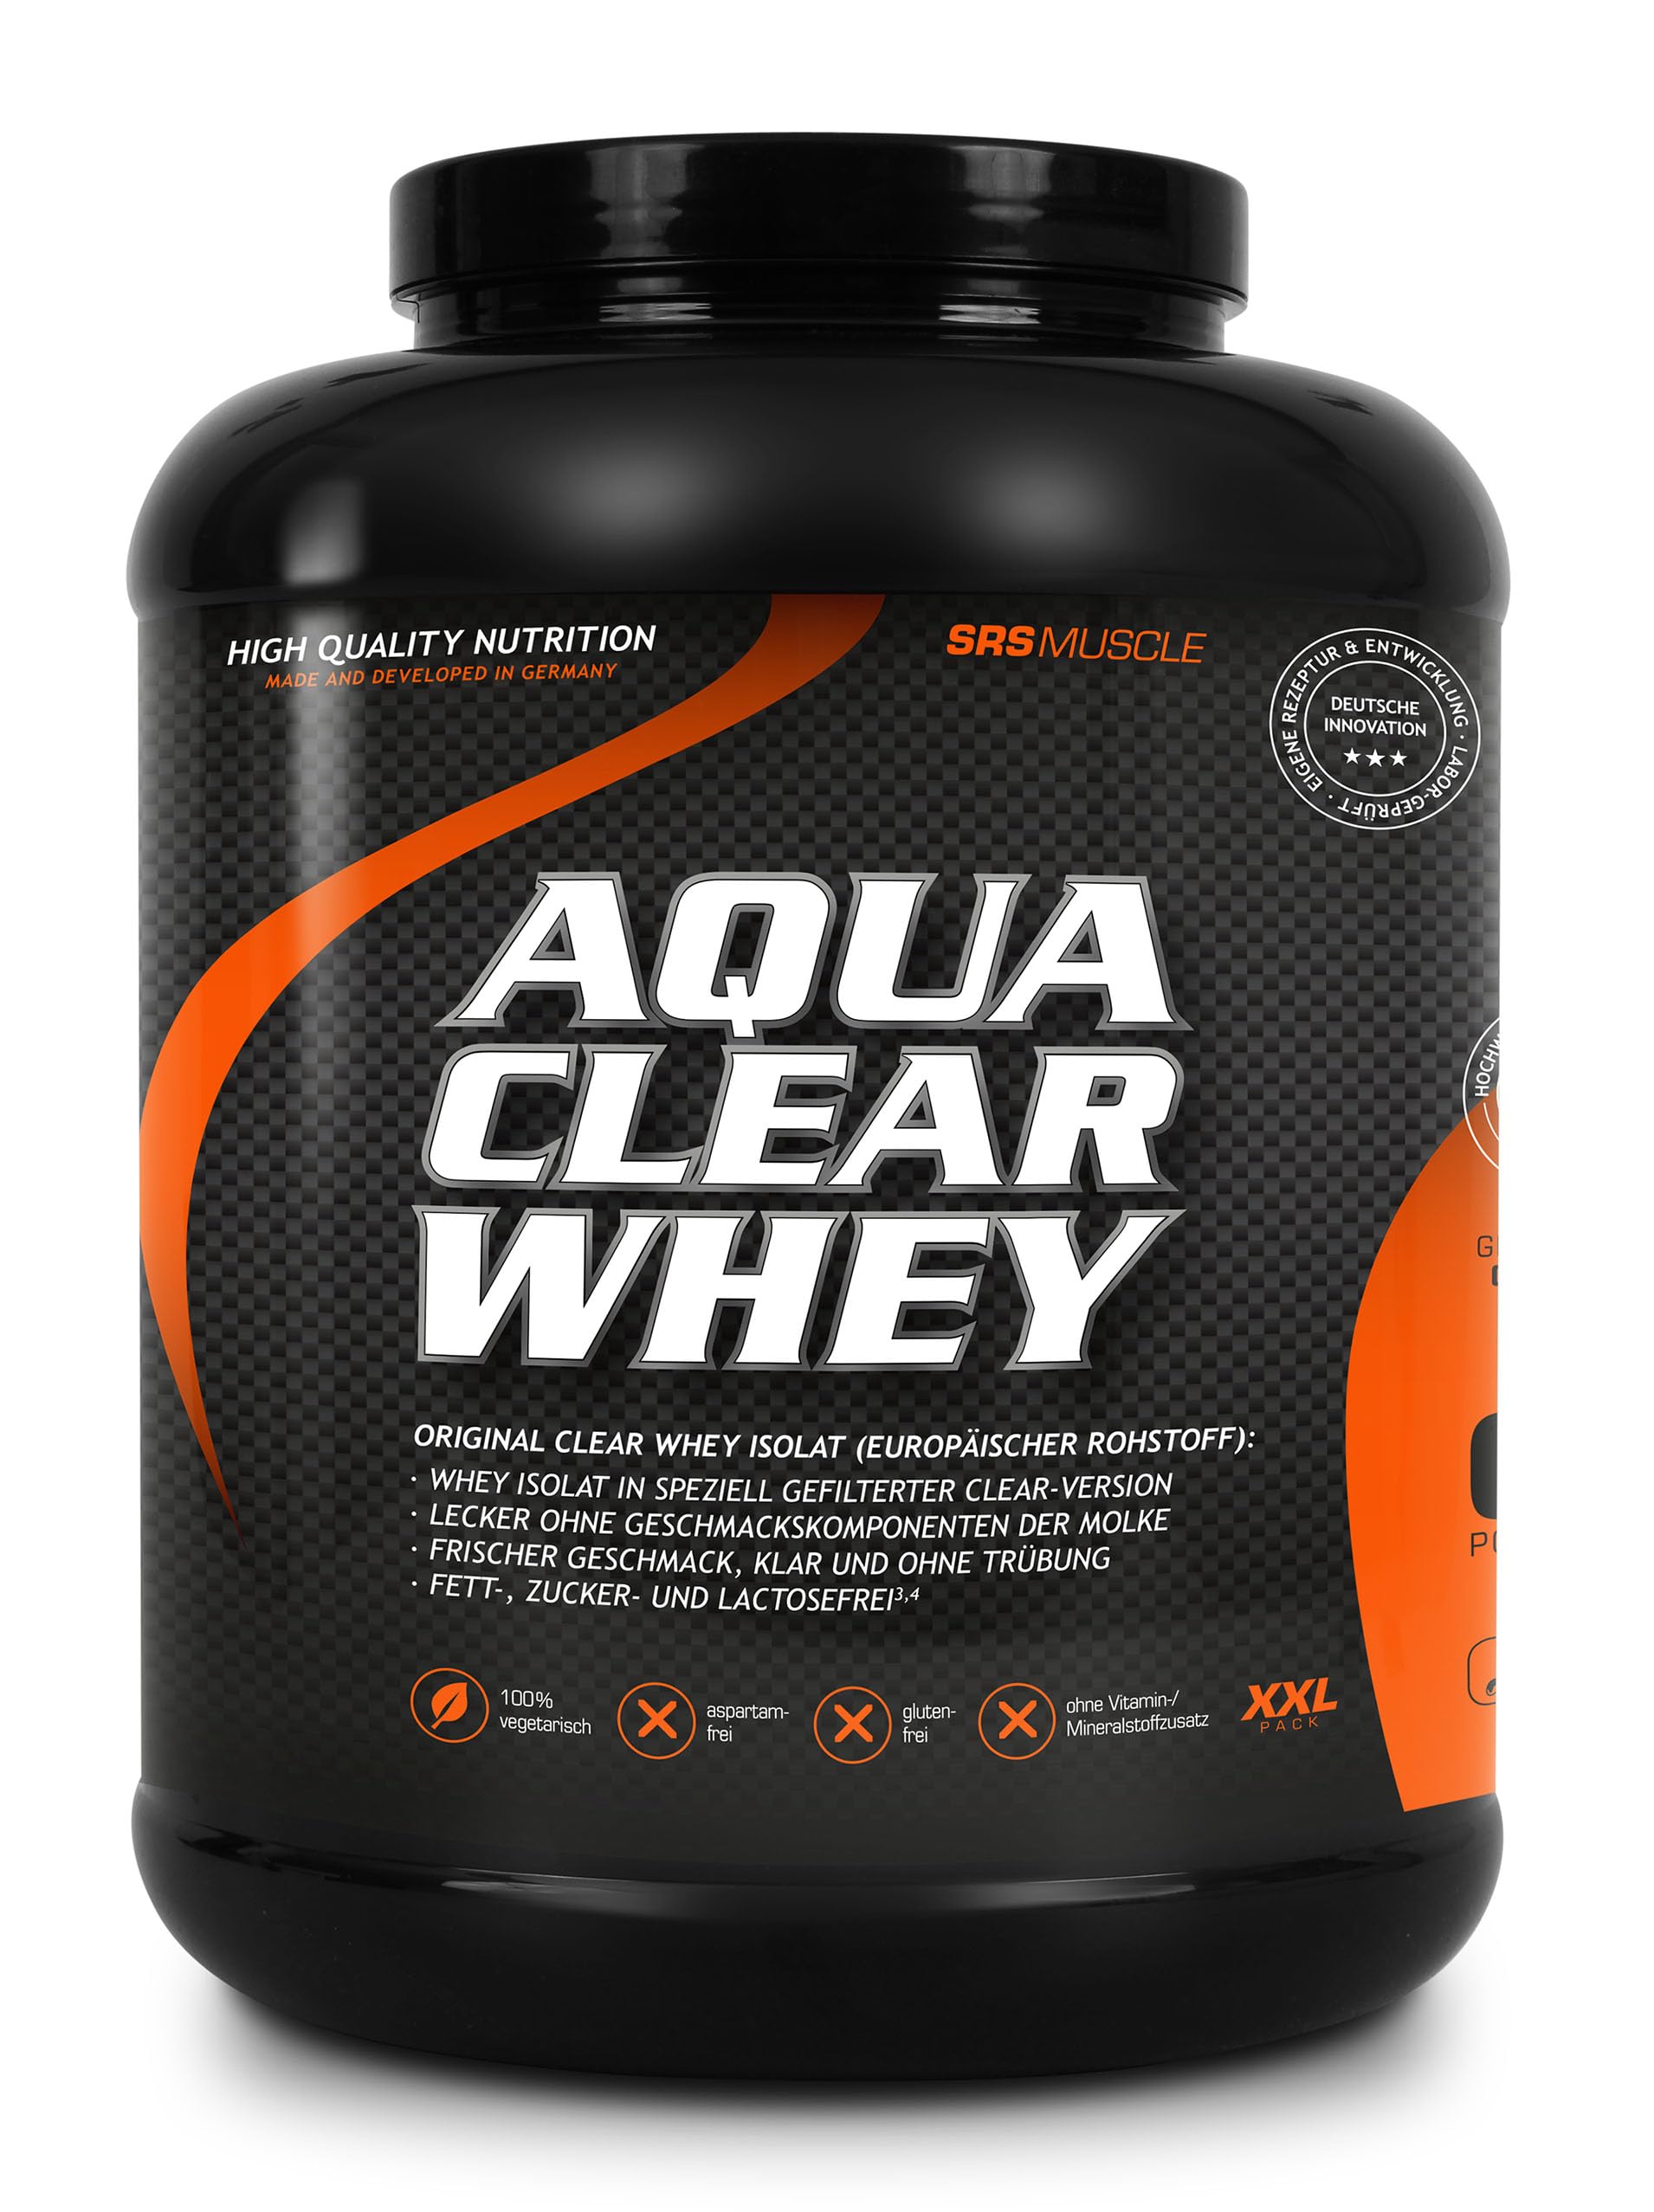 SRS Muscle - Aqua Clear Whey | leckerer Clear Whey Proteindrink | super erfrischend, weniger süß | fett-, zucker- und lactosefrei | deutsche Premiumqualität (Clear Cherry, 1.900 g)